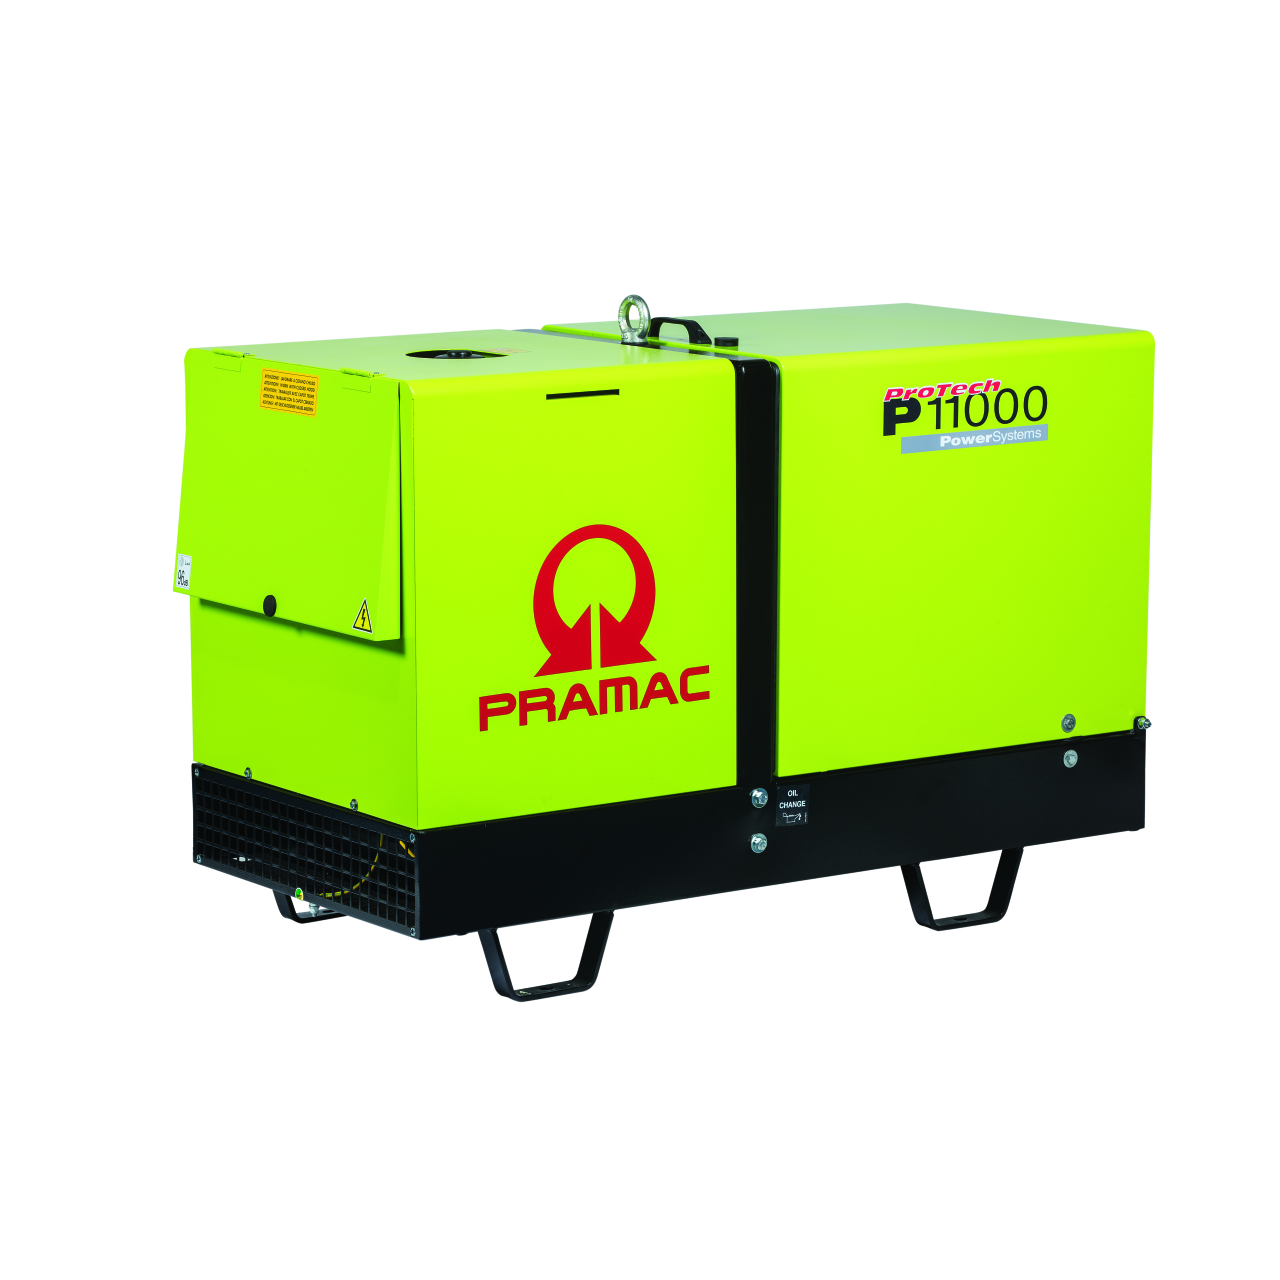 Stromerzeuger  P 11000 - TYA ISO 230V / 400V - DIESEL - E START